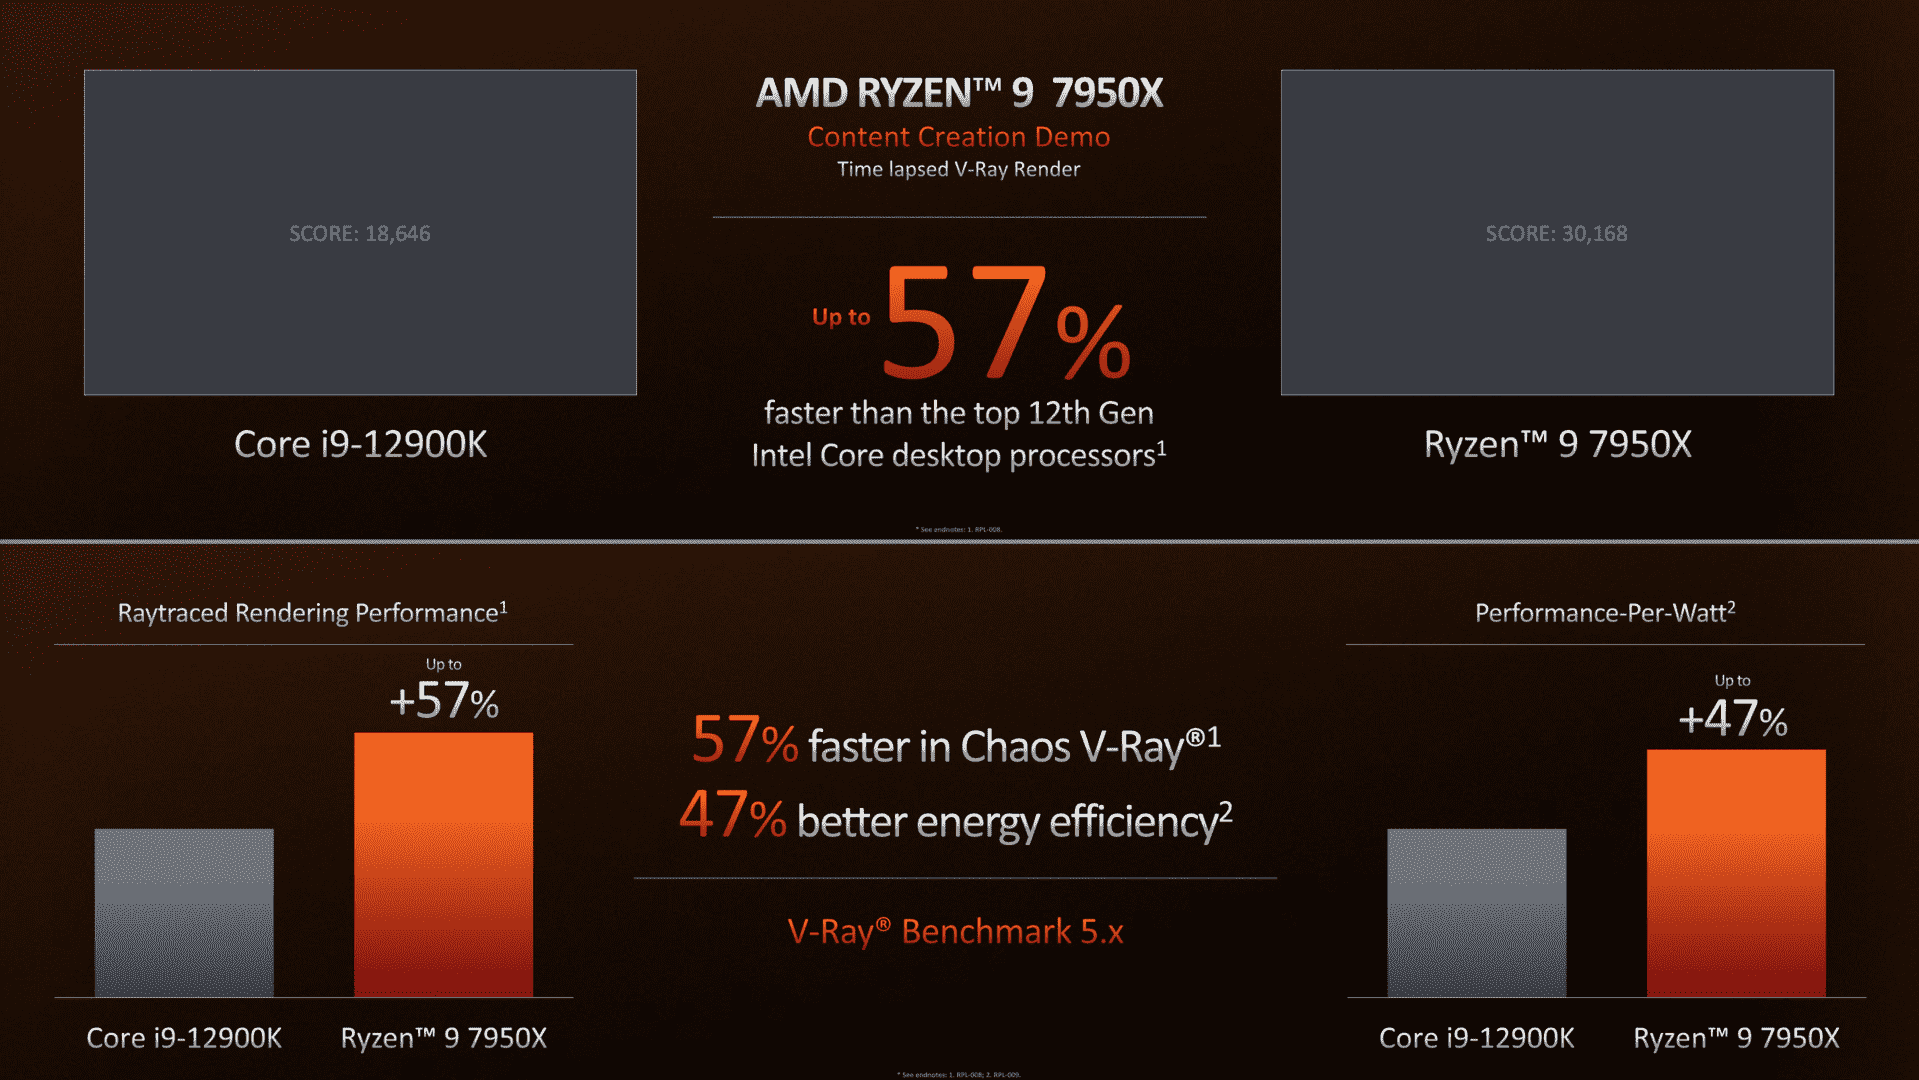 In vray, AMD wins by a wide margin